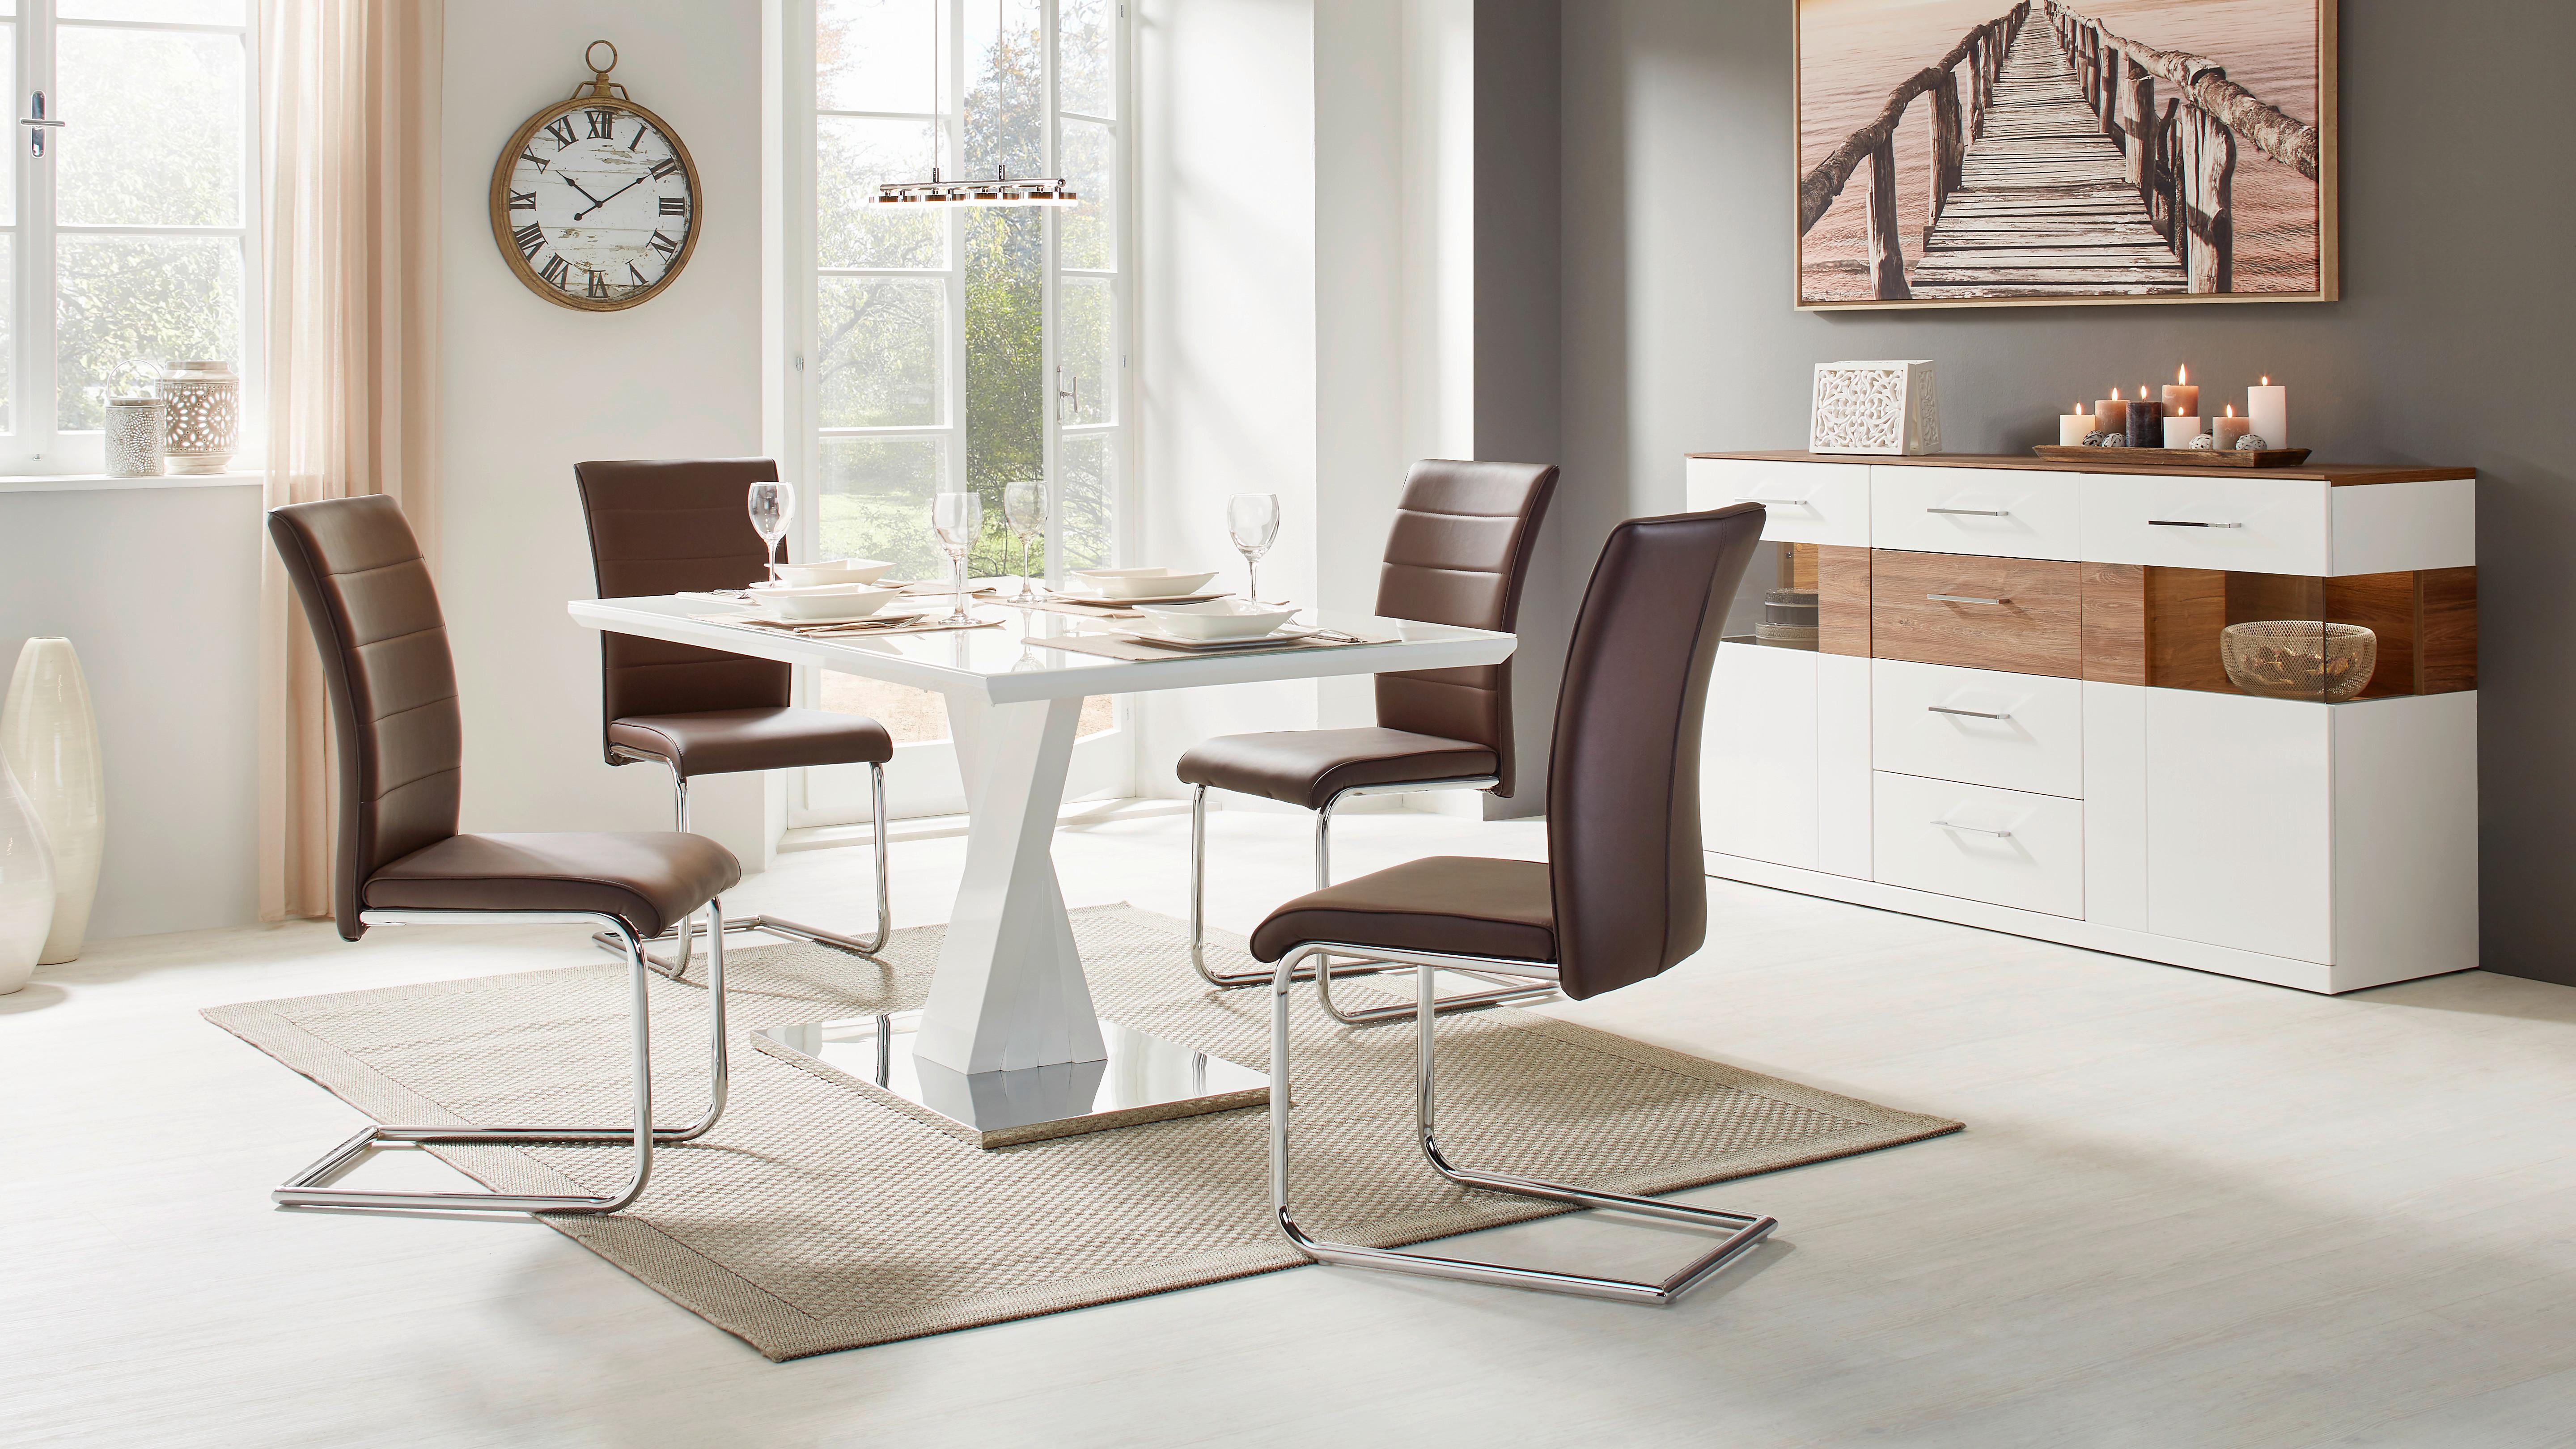 Jídelní Stůl Samuel - bílá/barvy nerez oceli, Moderní, kov/kompozitní dřevo (160/90/70cm) - Modern Living